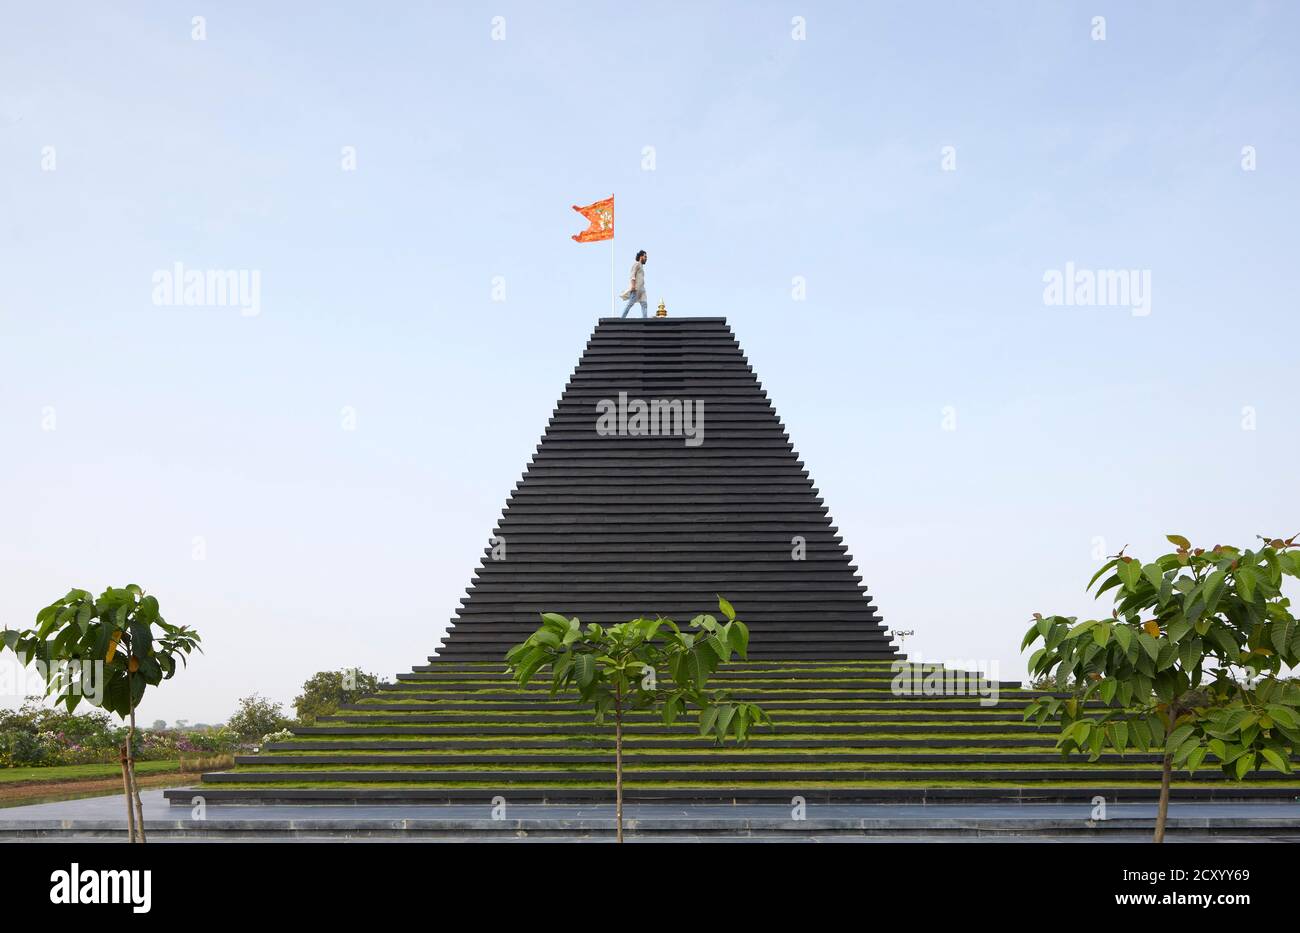 Vue latérale du temple avec figure sur le toit. Temple Balaji, Andhra Pradesh, Inde. Architecte: Sameep Padora et associés , 2020. Banque D'Images